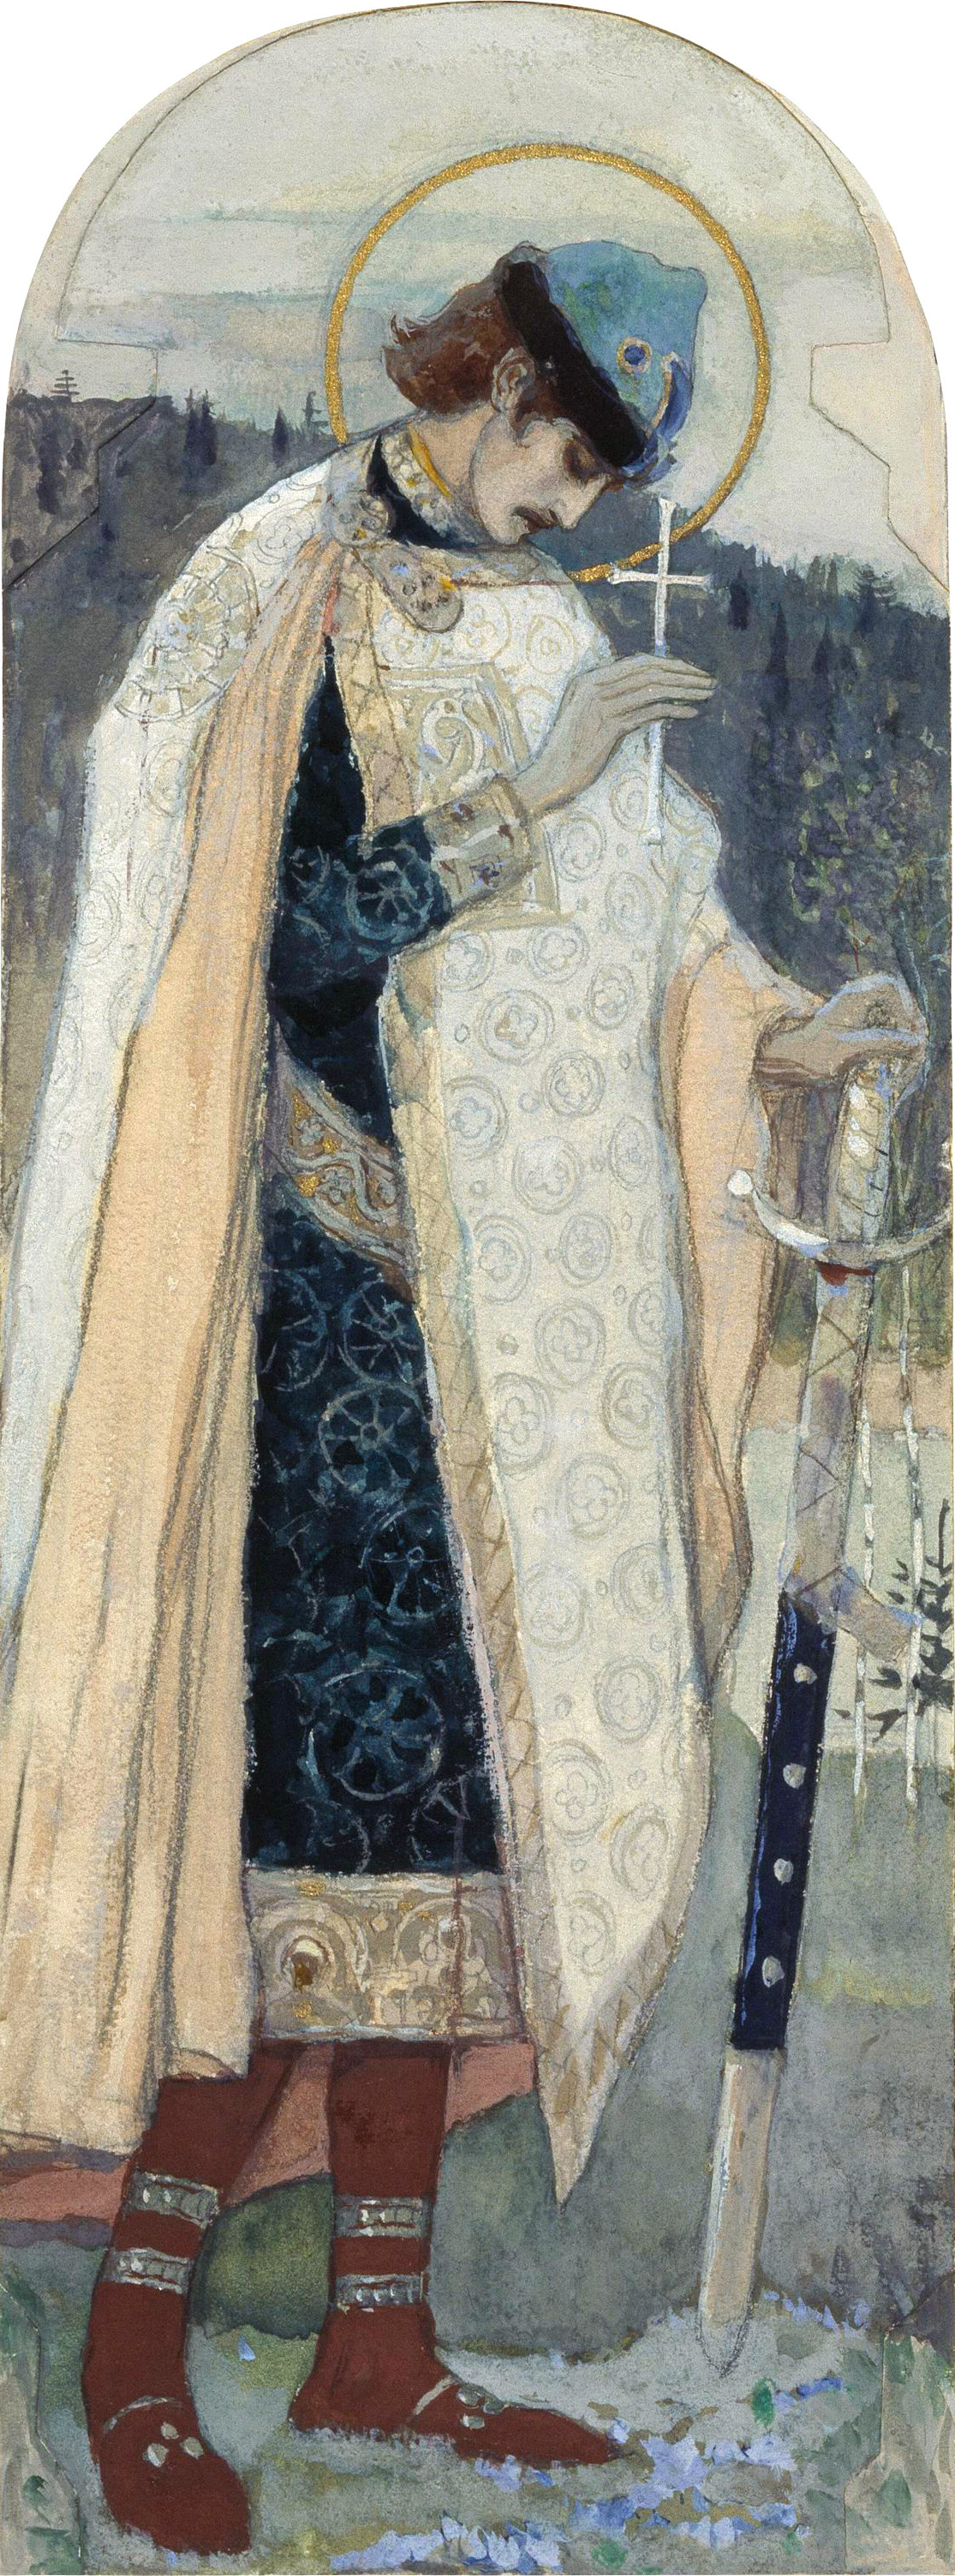 Нестеров М.. Святой князь Борис. 1891